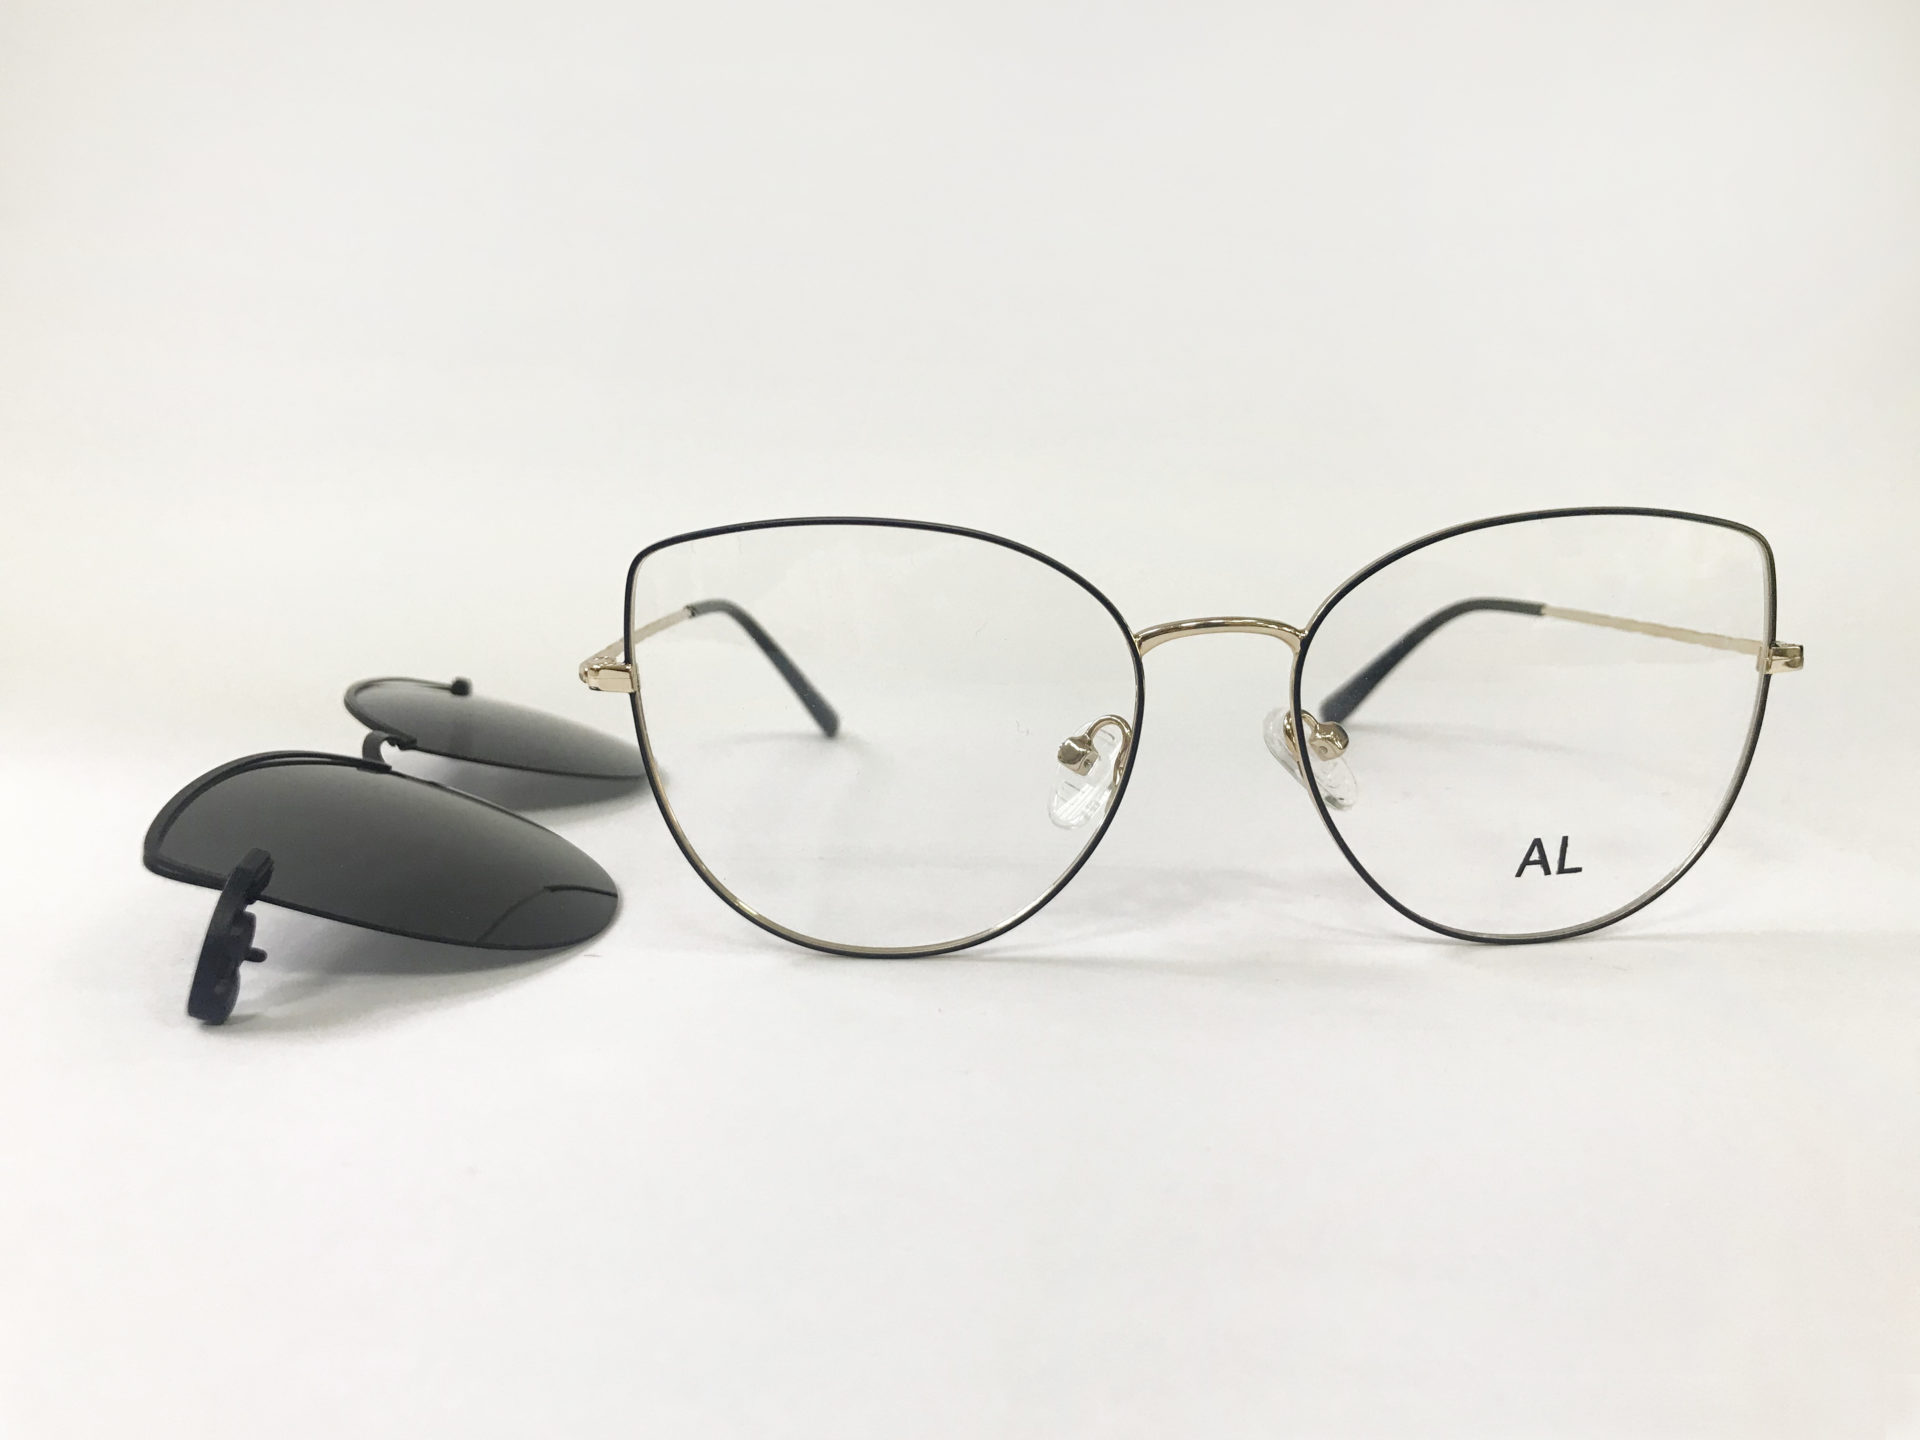 Оправа для очков с солнцезащитной накладкой - выбор стильной защиты для глаз